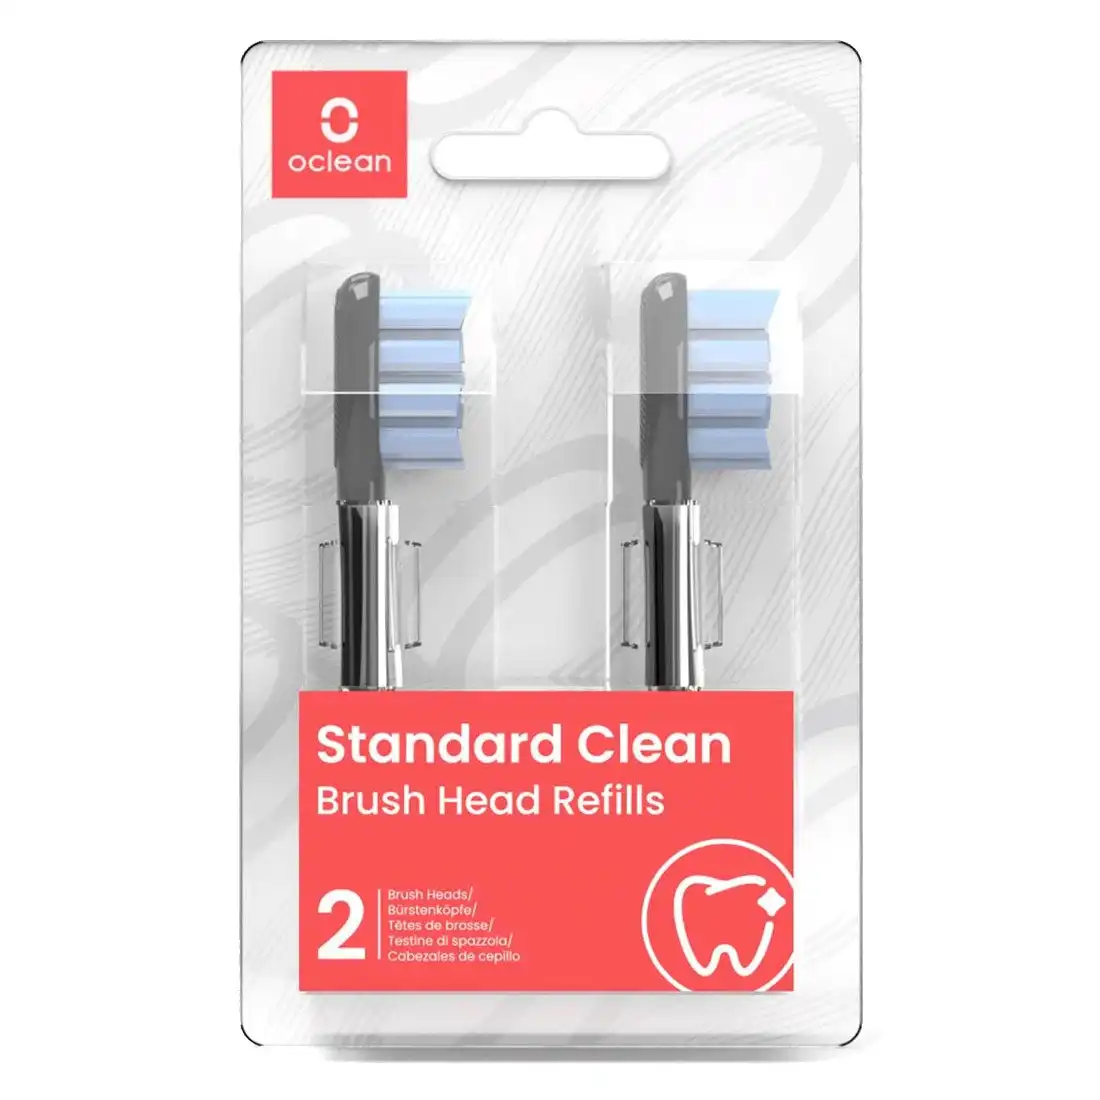 Oclean Standard Clean Brush Head 2 Pack - Black